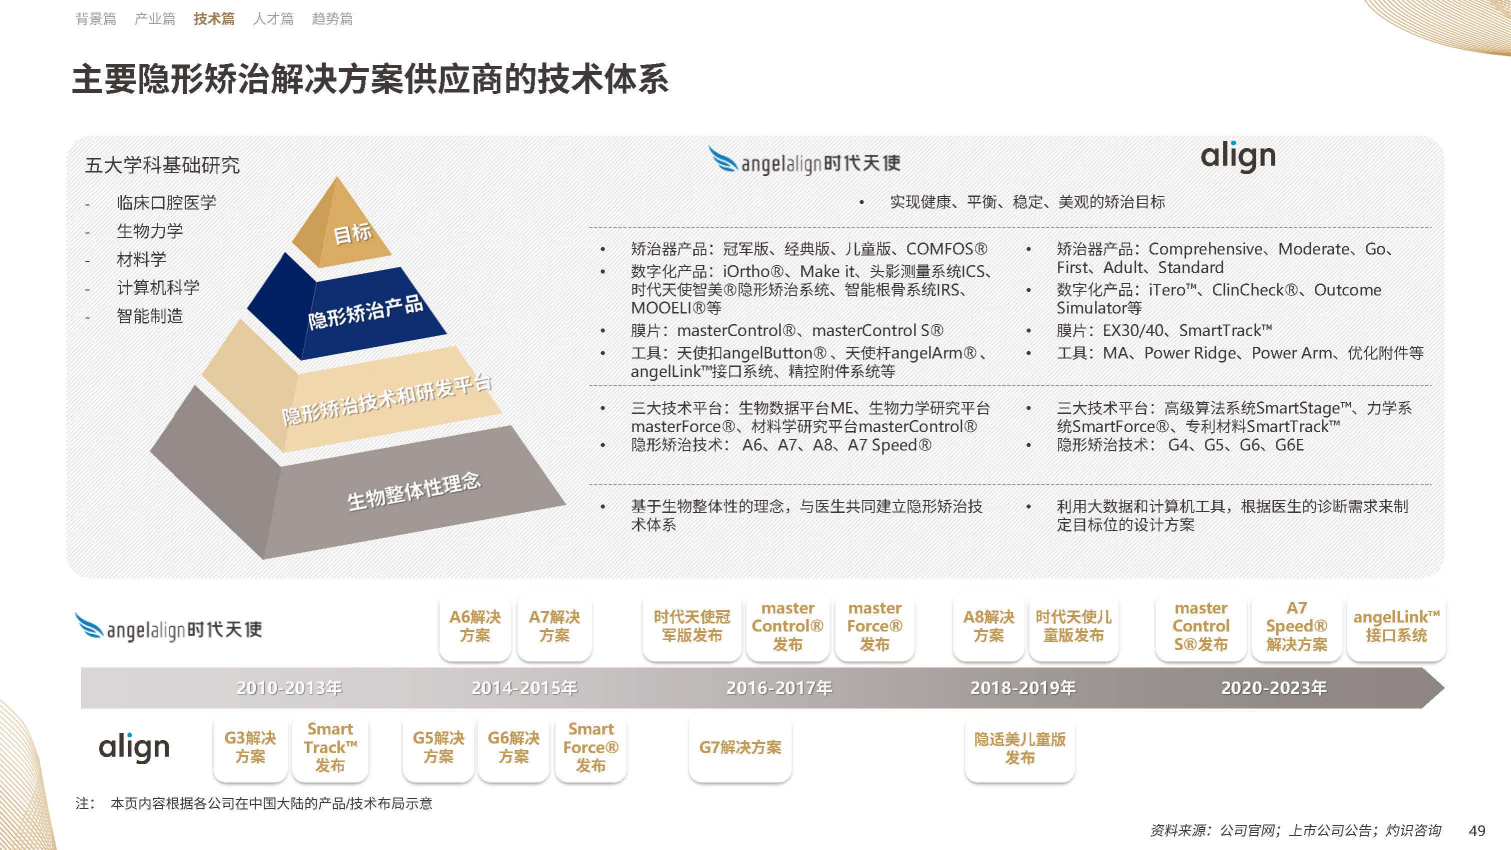 【09】20年溯源与展望：《中国隐形正畸行业白皮书》正式发布-图片3(1).png